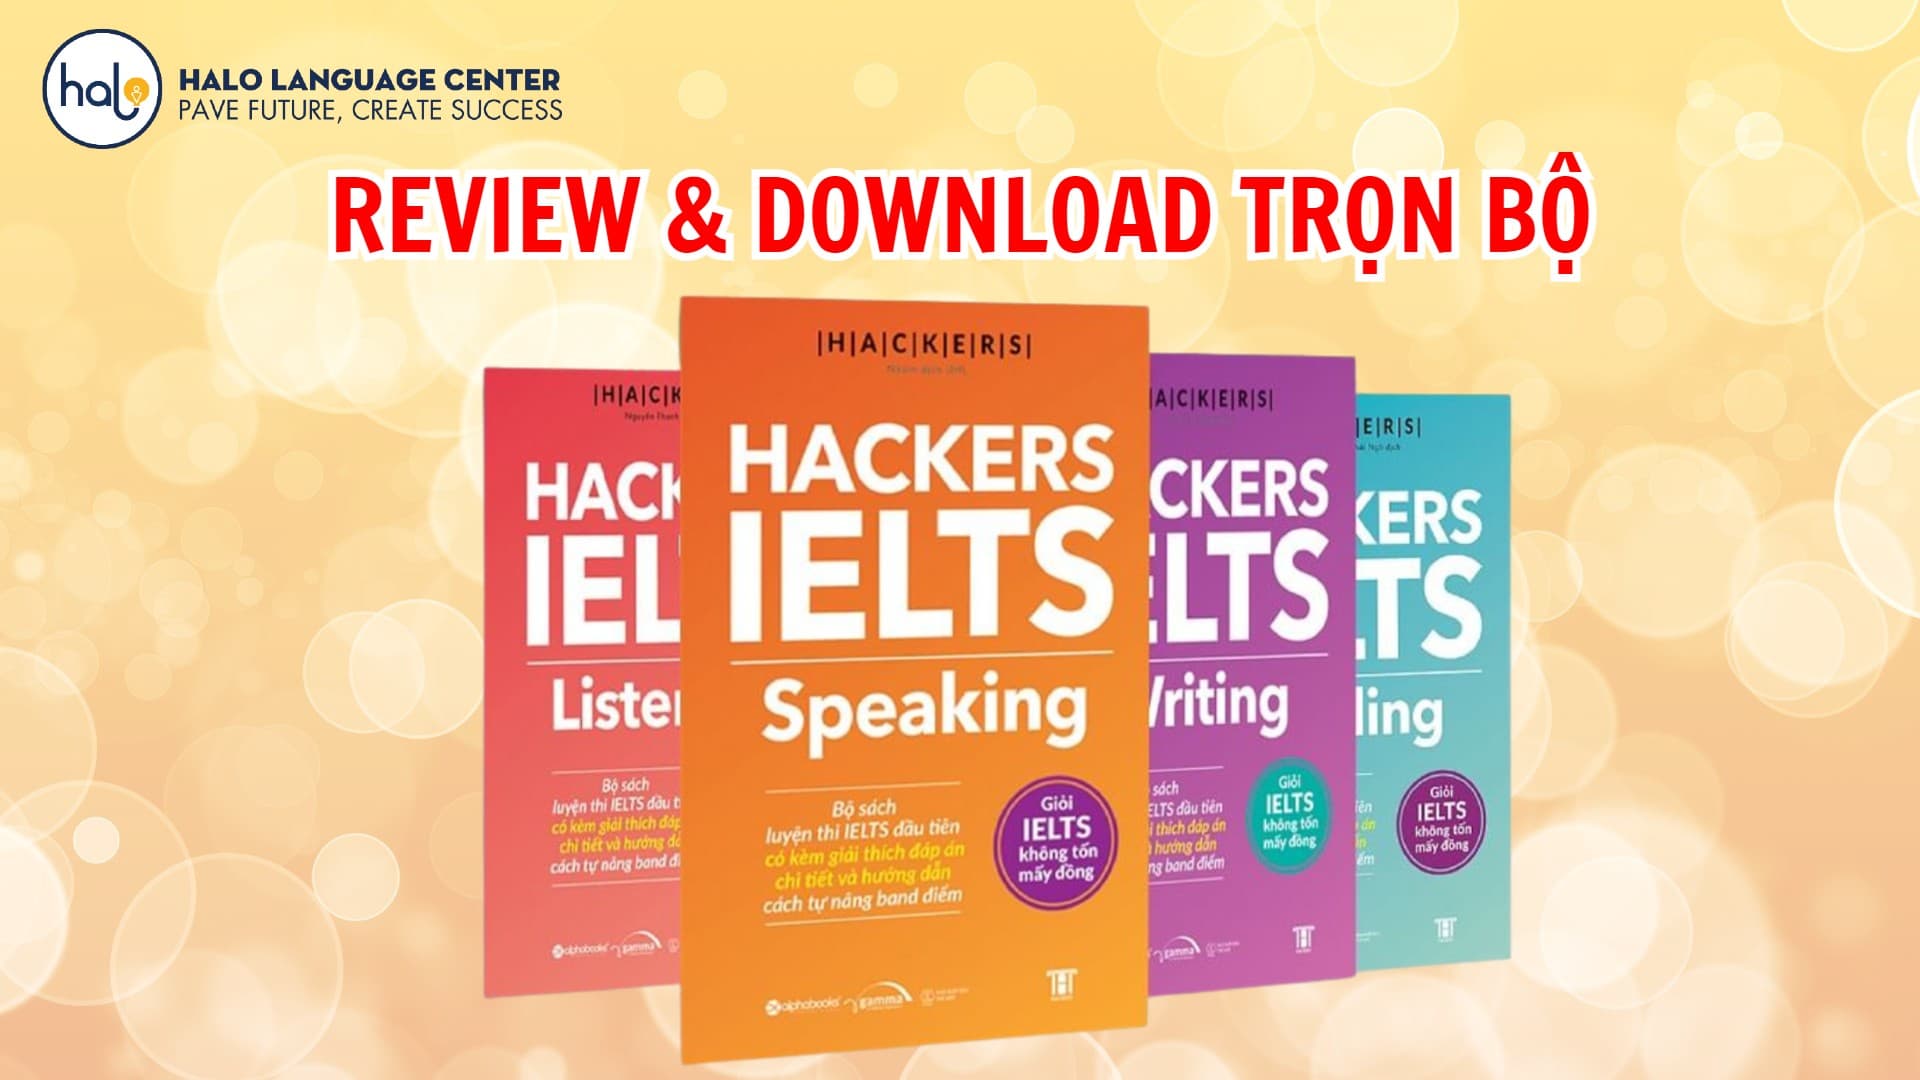 HACKERS IELTS trọn bộ 4 kỹ năng review và download (PDF + Audio)